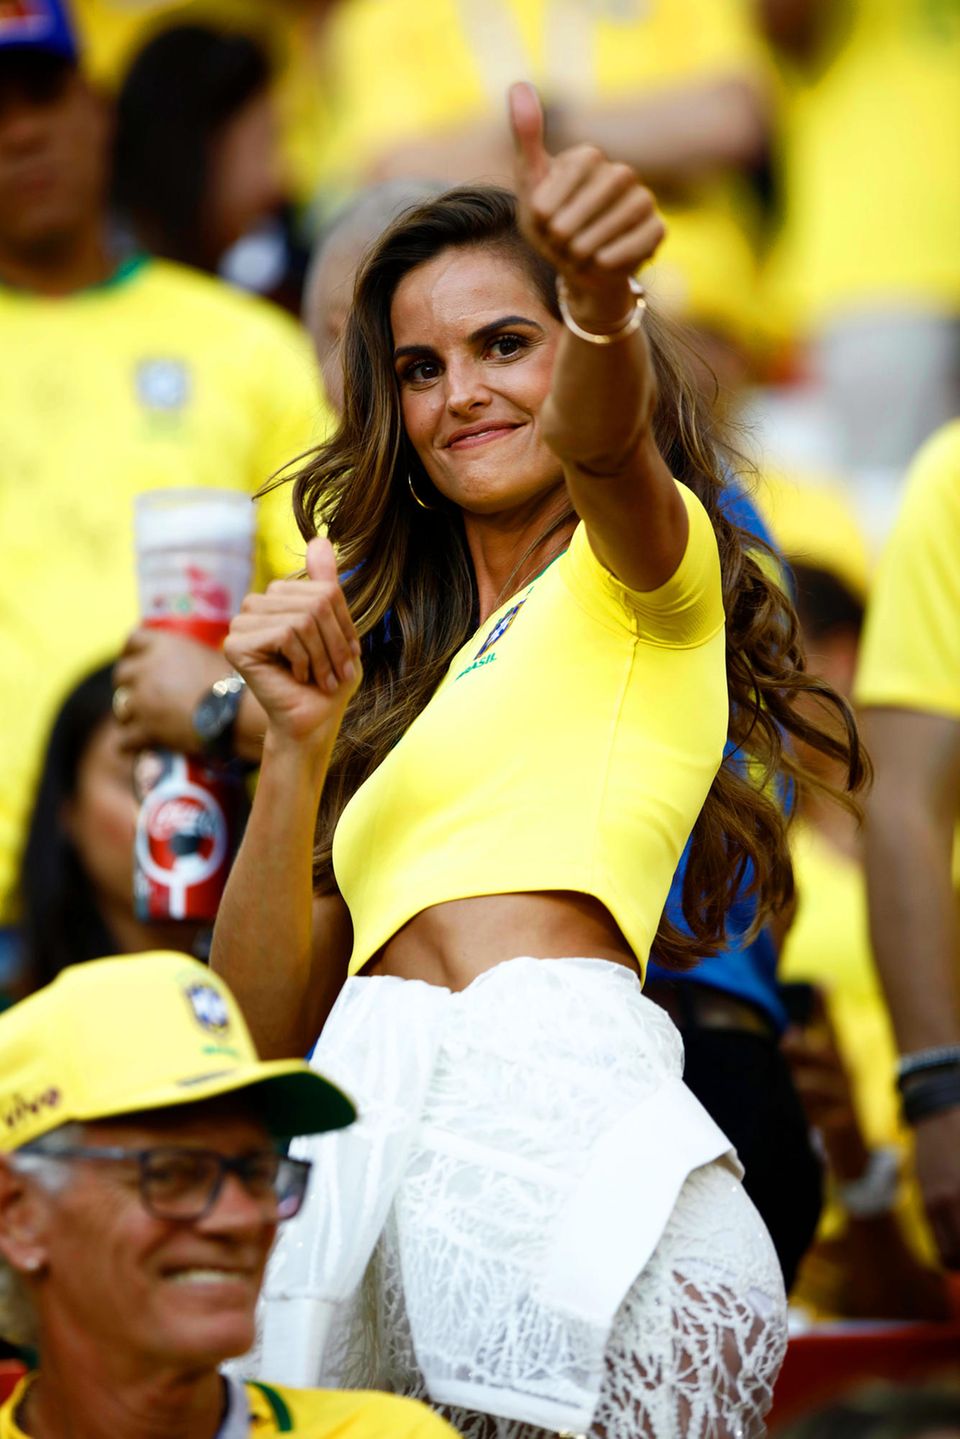 Daumen hoch für diesen Look! Das brasilianische Topmodel Izabel Goulart feuert ihre Mannschaft im Gruppenspiel gegen Serbien im Moskauer Spartak-Stadion nicht nur im knappen, gelben CBF-Trikot an, sondern auch mit einem ganz besonderen Luxus-Outfit.